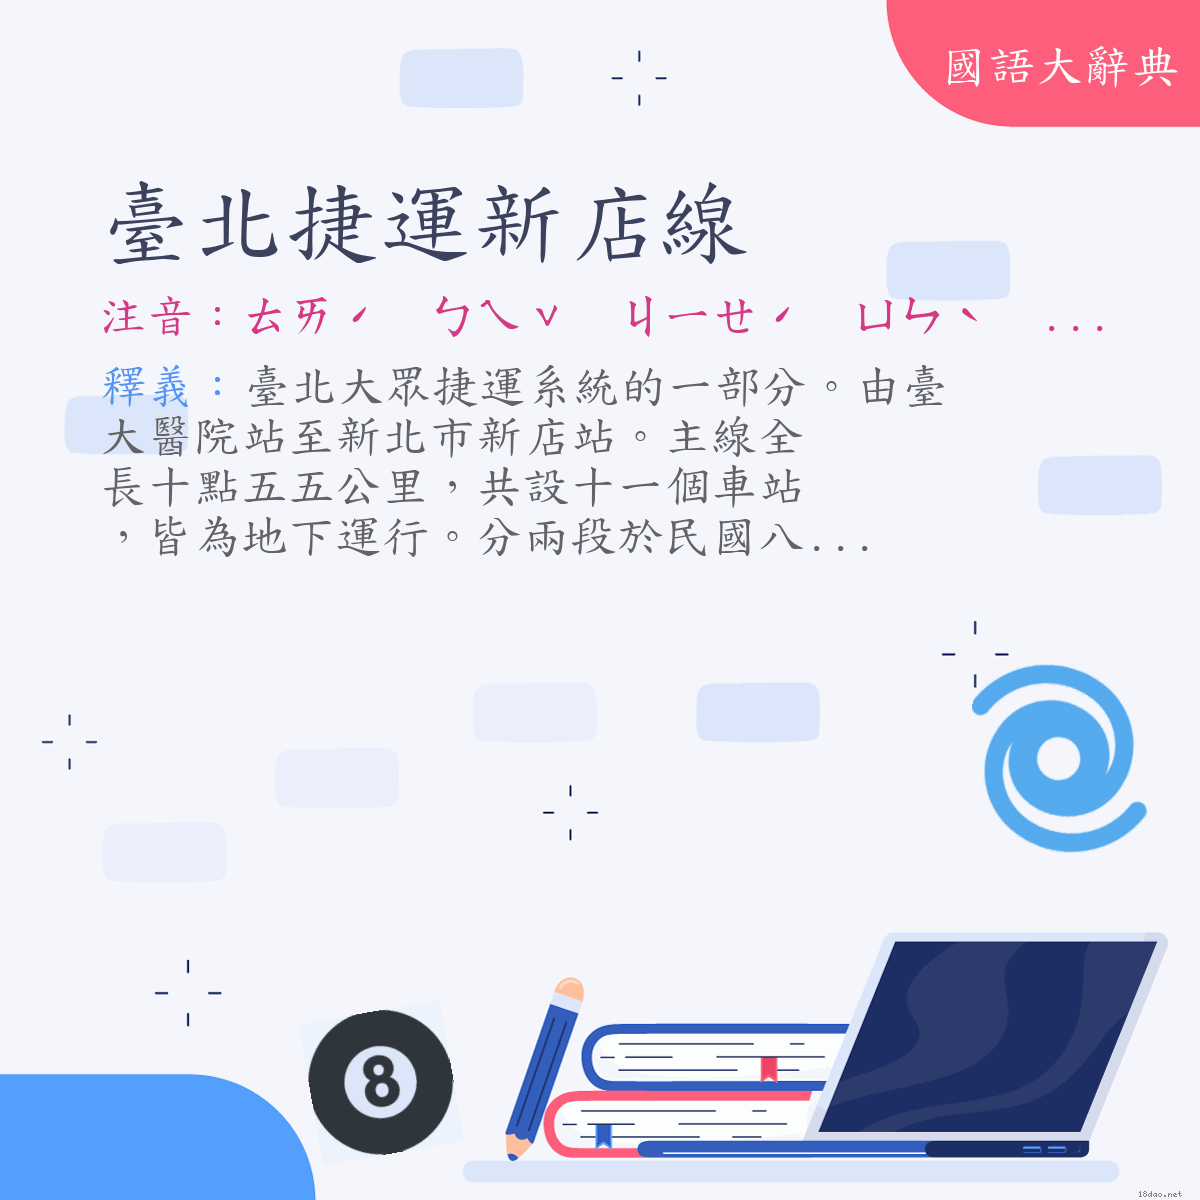 詞語:臺北捷運新店線 (注音:ㄊㄞˊ　ㄅㄟˇ　ㄐㄧㄝˊ　ㄩㄣˋ　ㄒㄧㄣ　ㄉㄧㄢˋ　ㄒㄧㄢˋ)